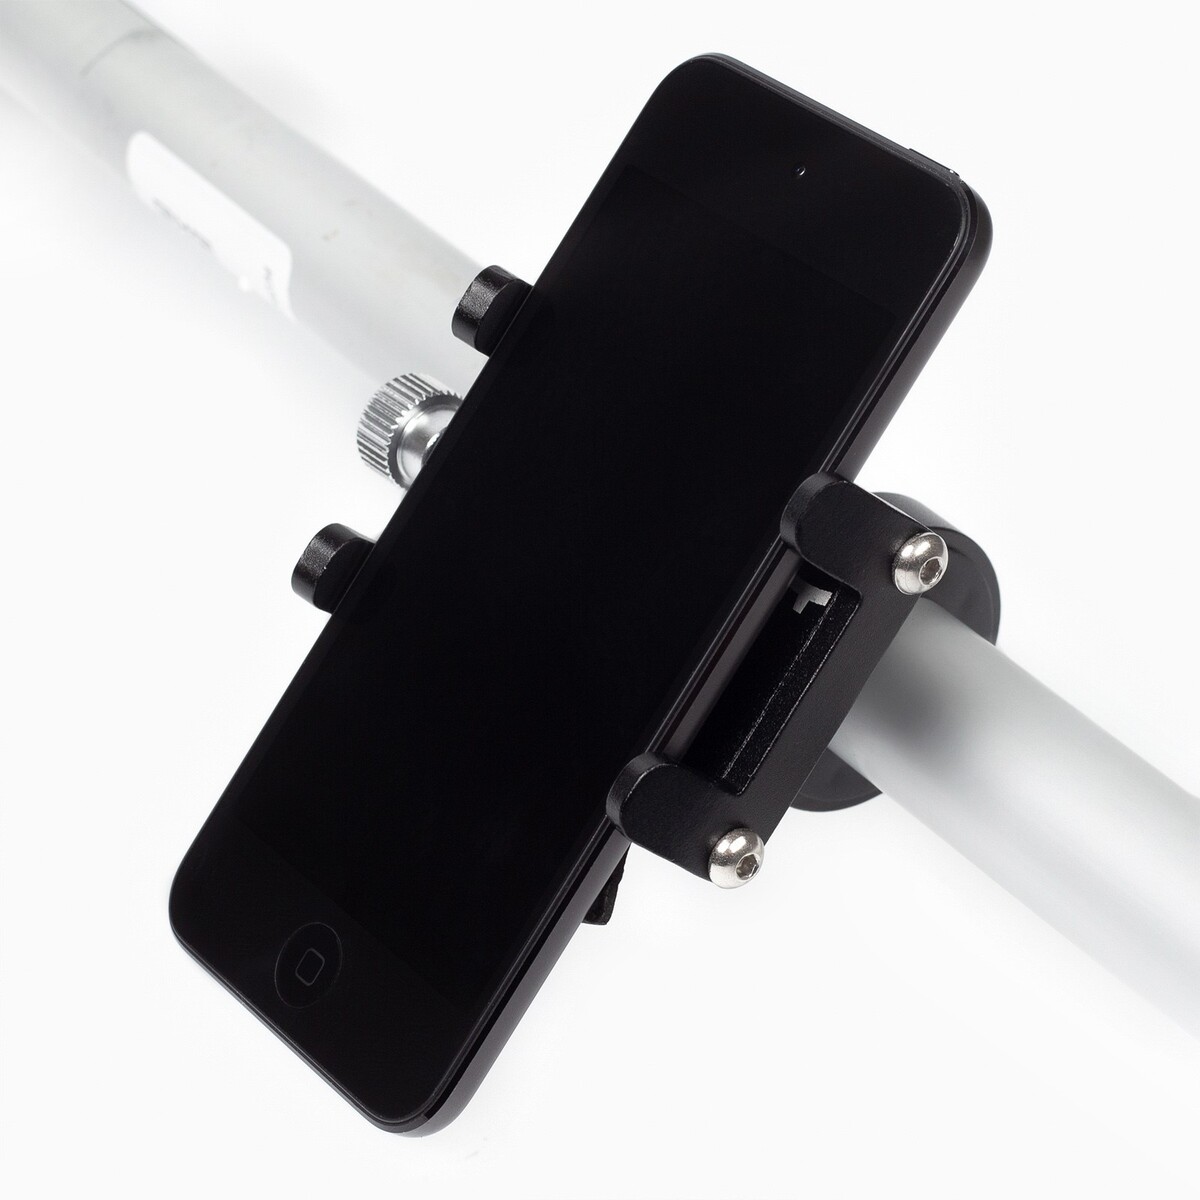 Держатель для телефона на велосипед, ширина фиксации 10 см, 5.3 х 2.8 х 8.8 см держатель телефона на клейкой основе 16×16 см